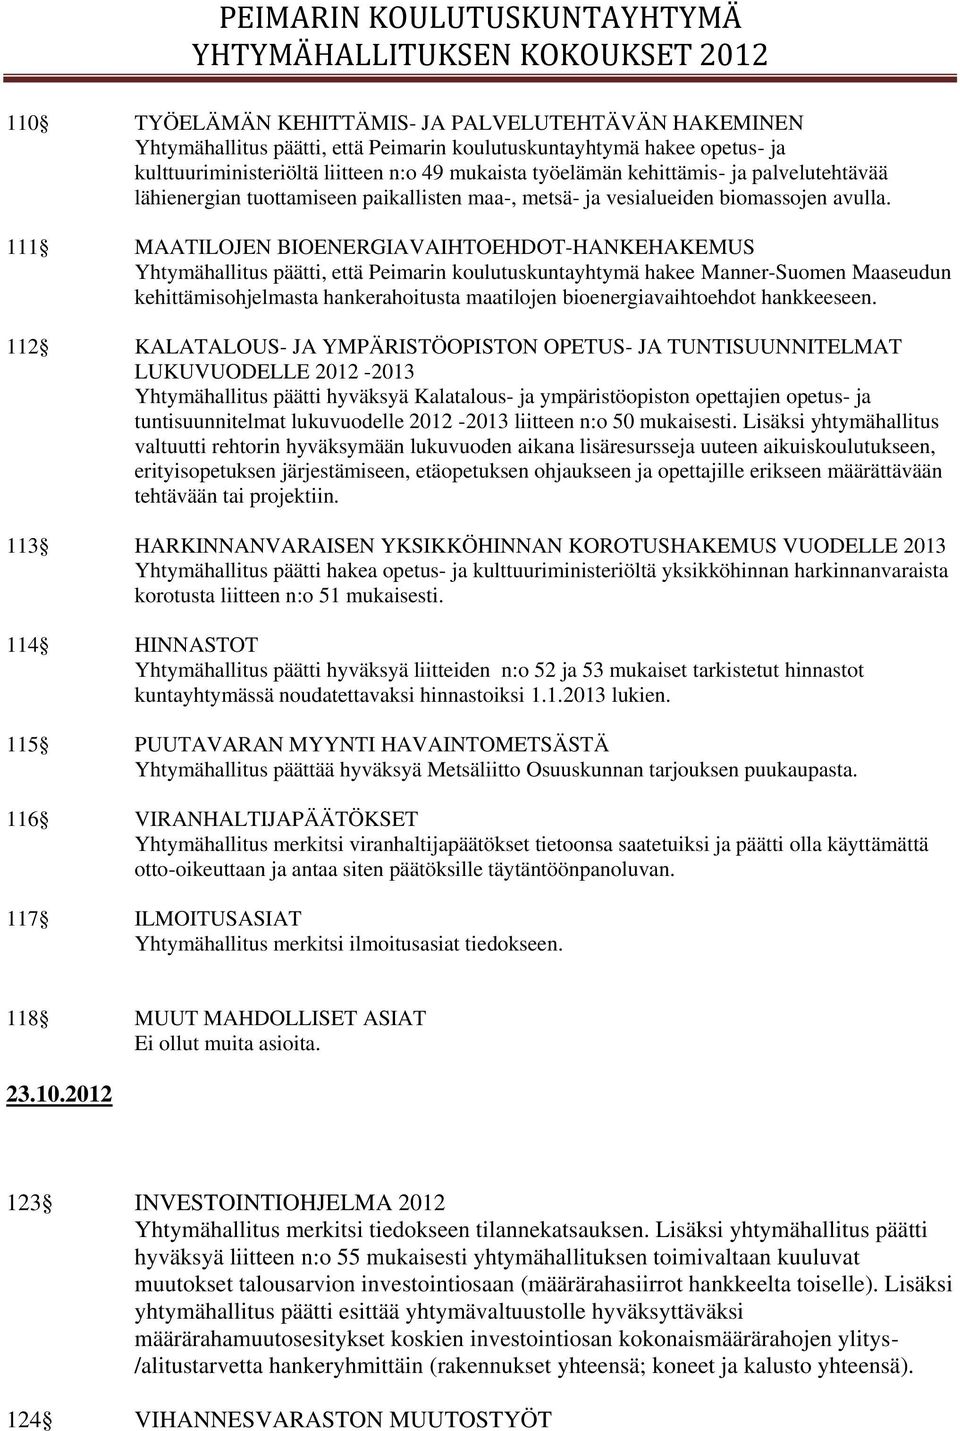 111 MAATILOJEN BIOENERGIAVAIHTOEHDOT-HANKEHAKEMUS Yhtymähallitus päätti, että Peimarin koulutuskuntayhtymä hakee Manner-Suomen Maaseudun kehittämisohjelmasta hankerahoitusta maatilojen